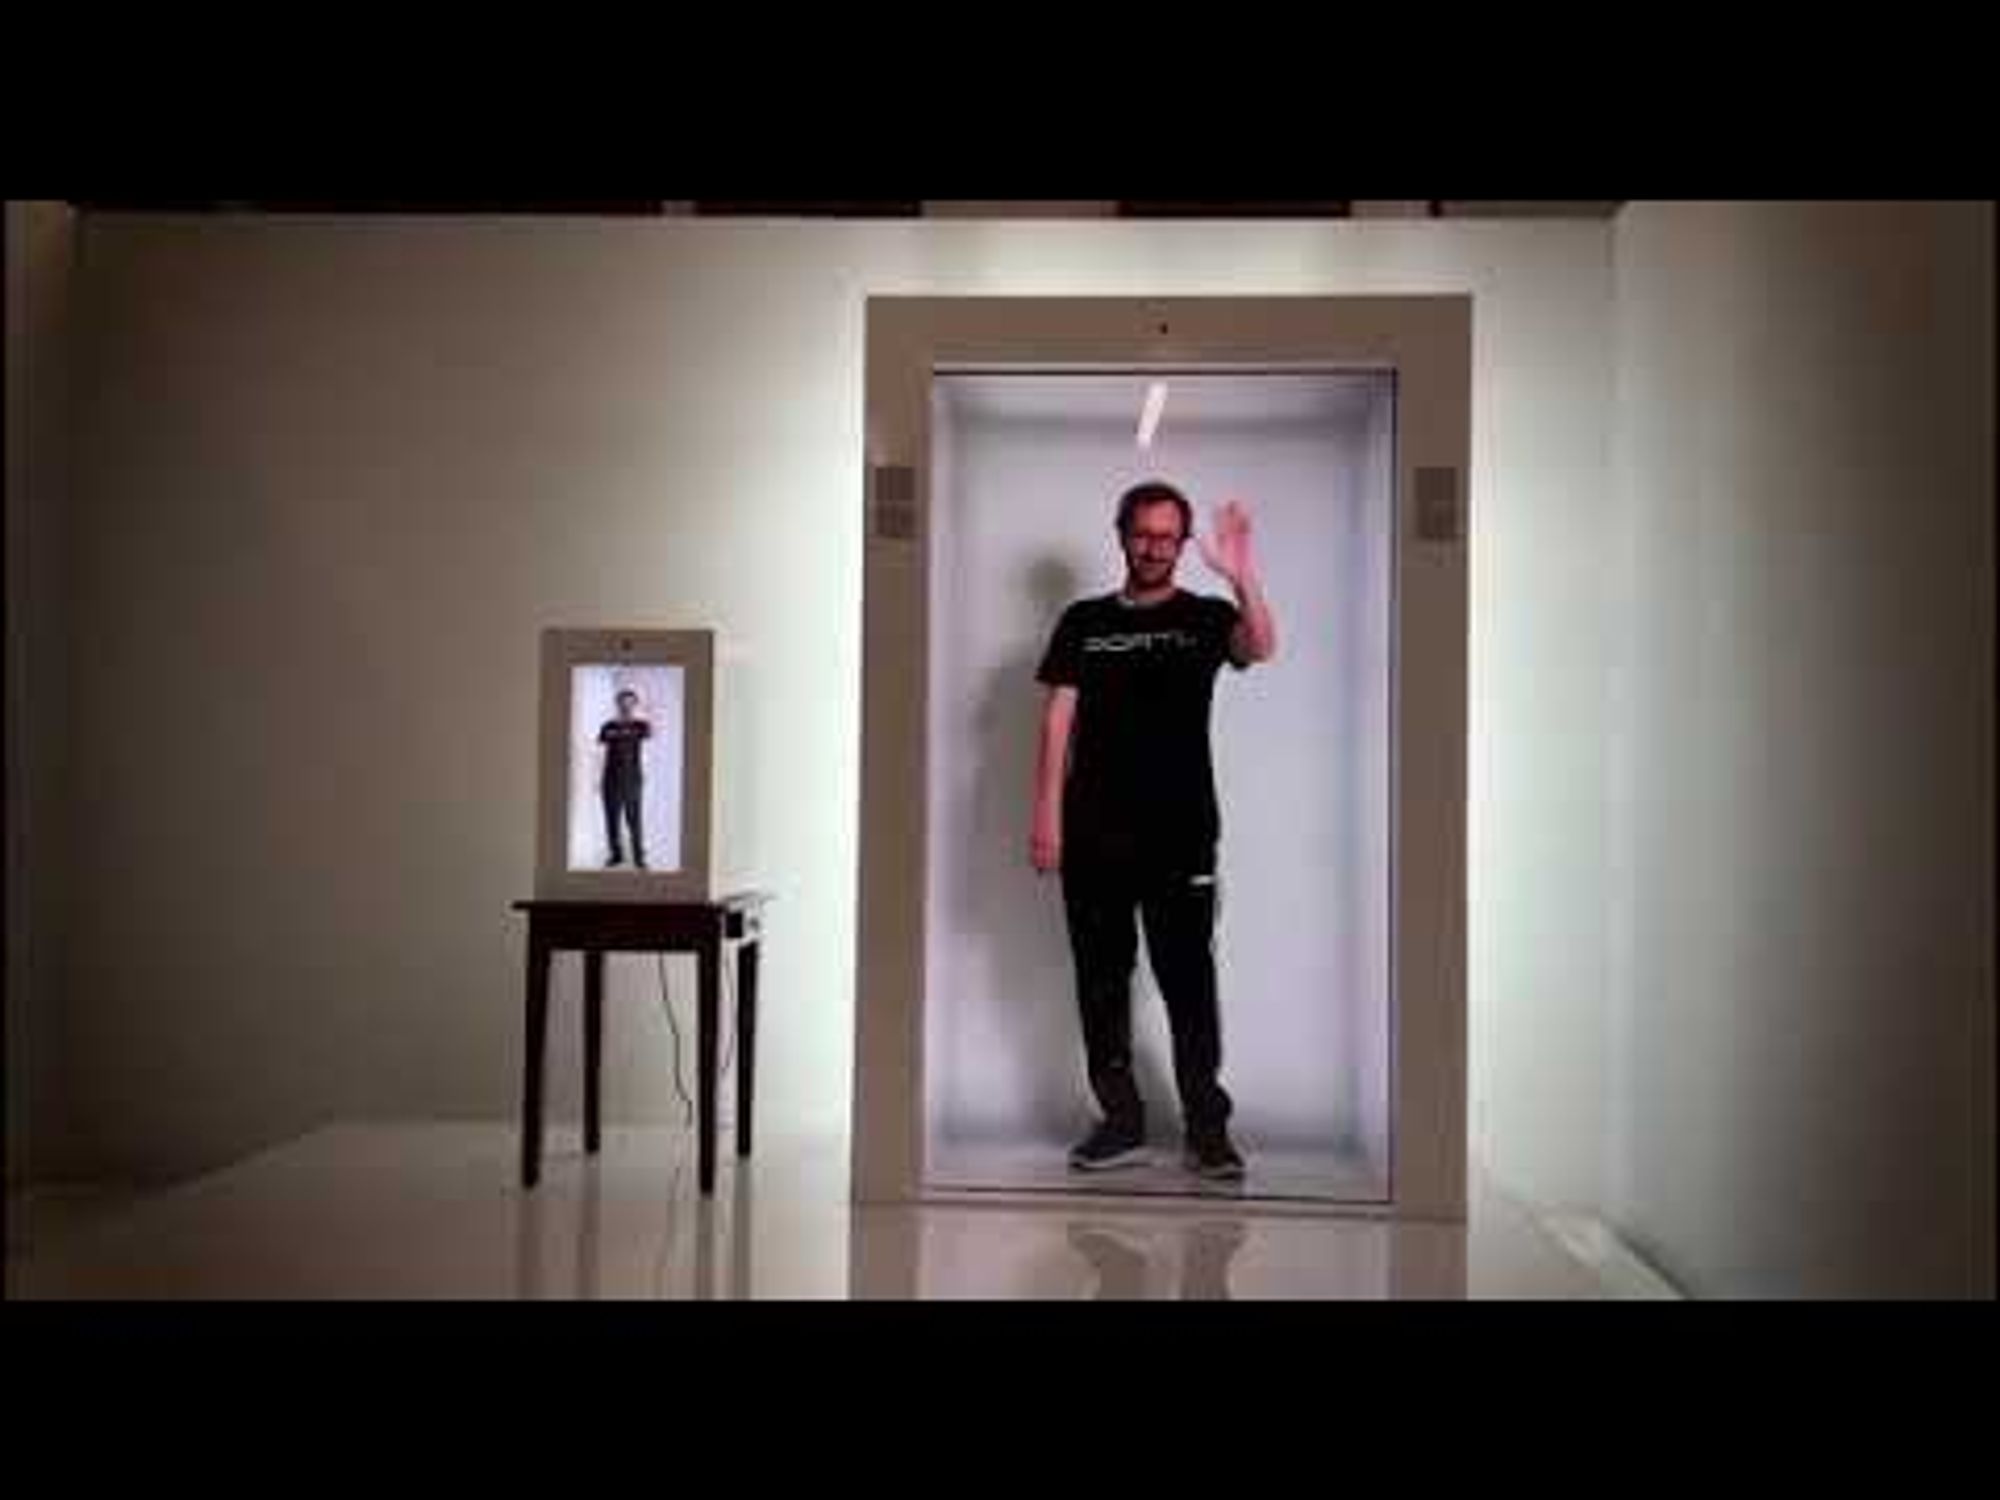 PORTL hologram promotional video